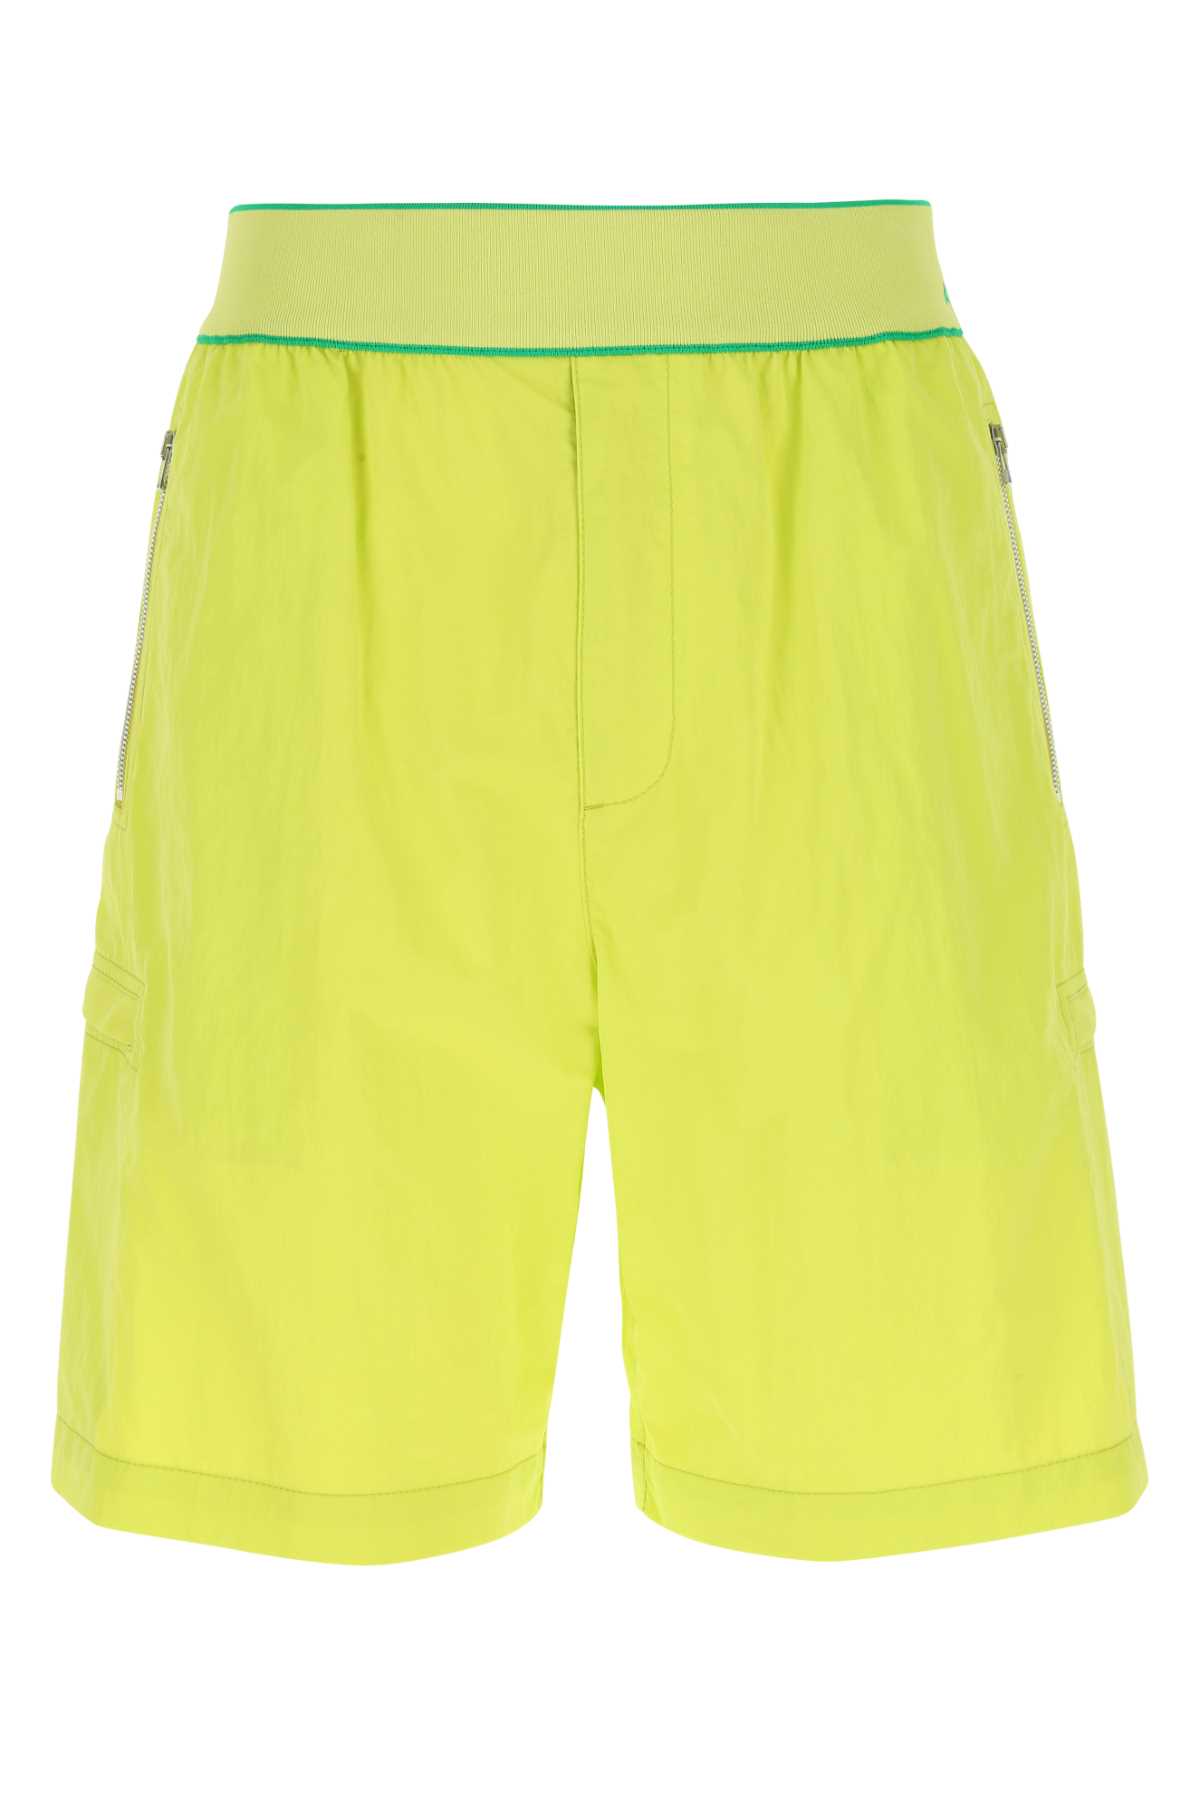 Acid Green Nylon Bermuda Shorts